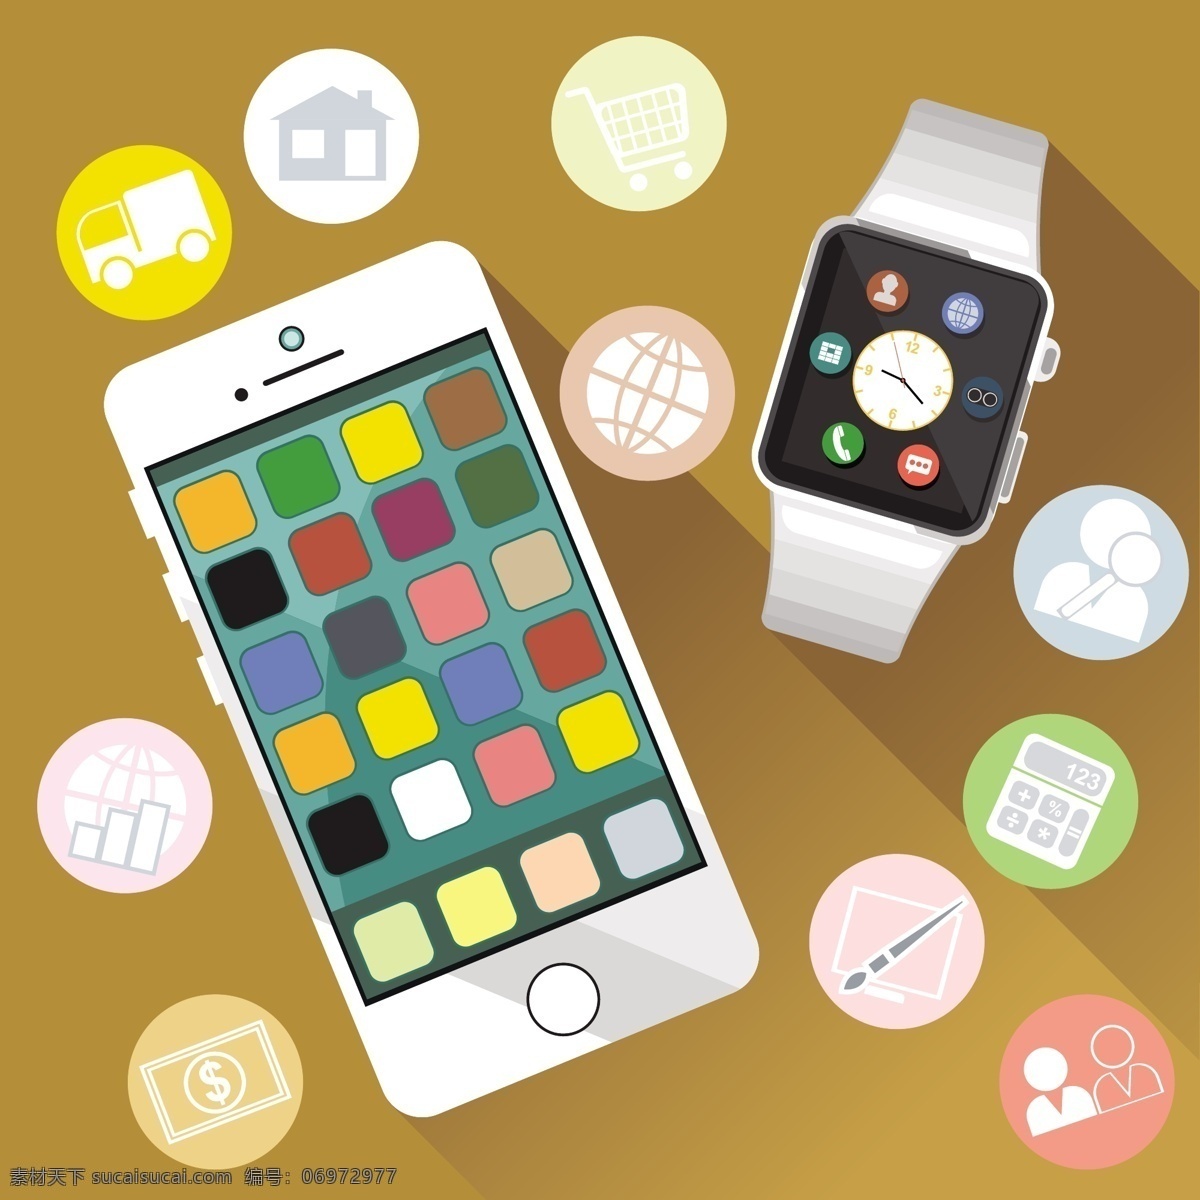 穿戴 手表 手机 扁平化 app 设计素材 eps格式 ui素材 可穿戴手表